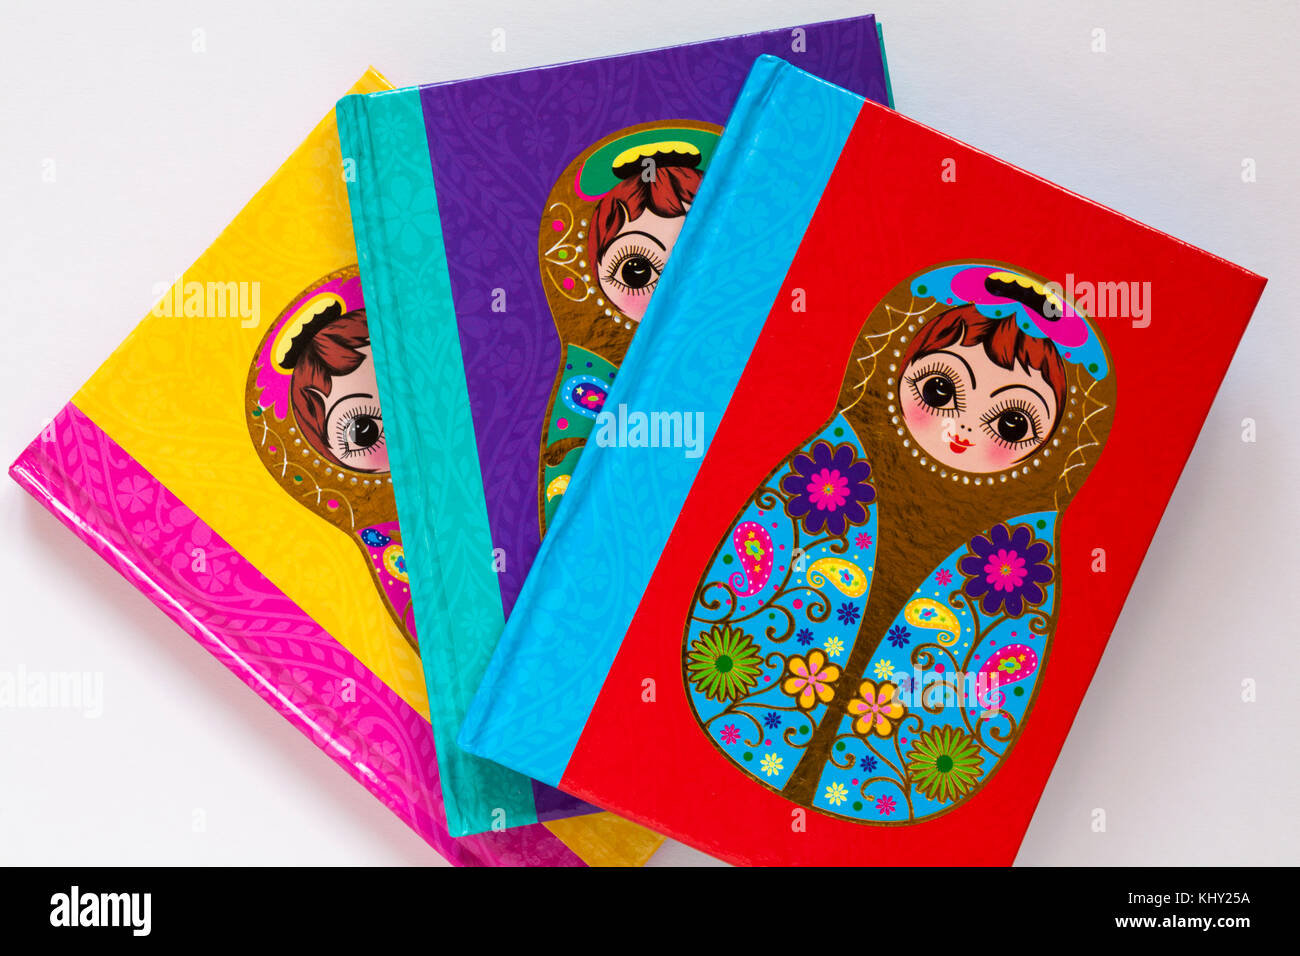 Tre colori diversi libri nota con Bambola matrioska sulla copertura impostata su sfondo bianco Foto Stock